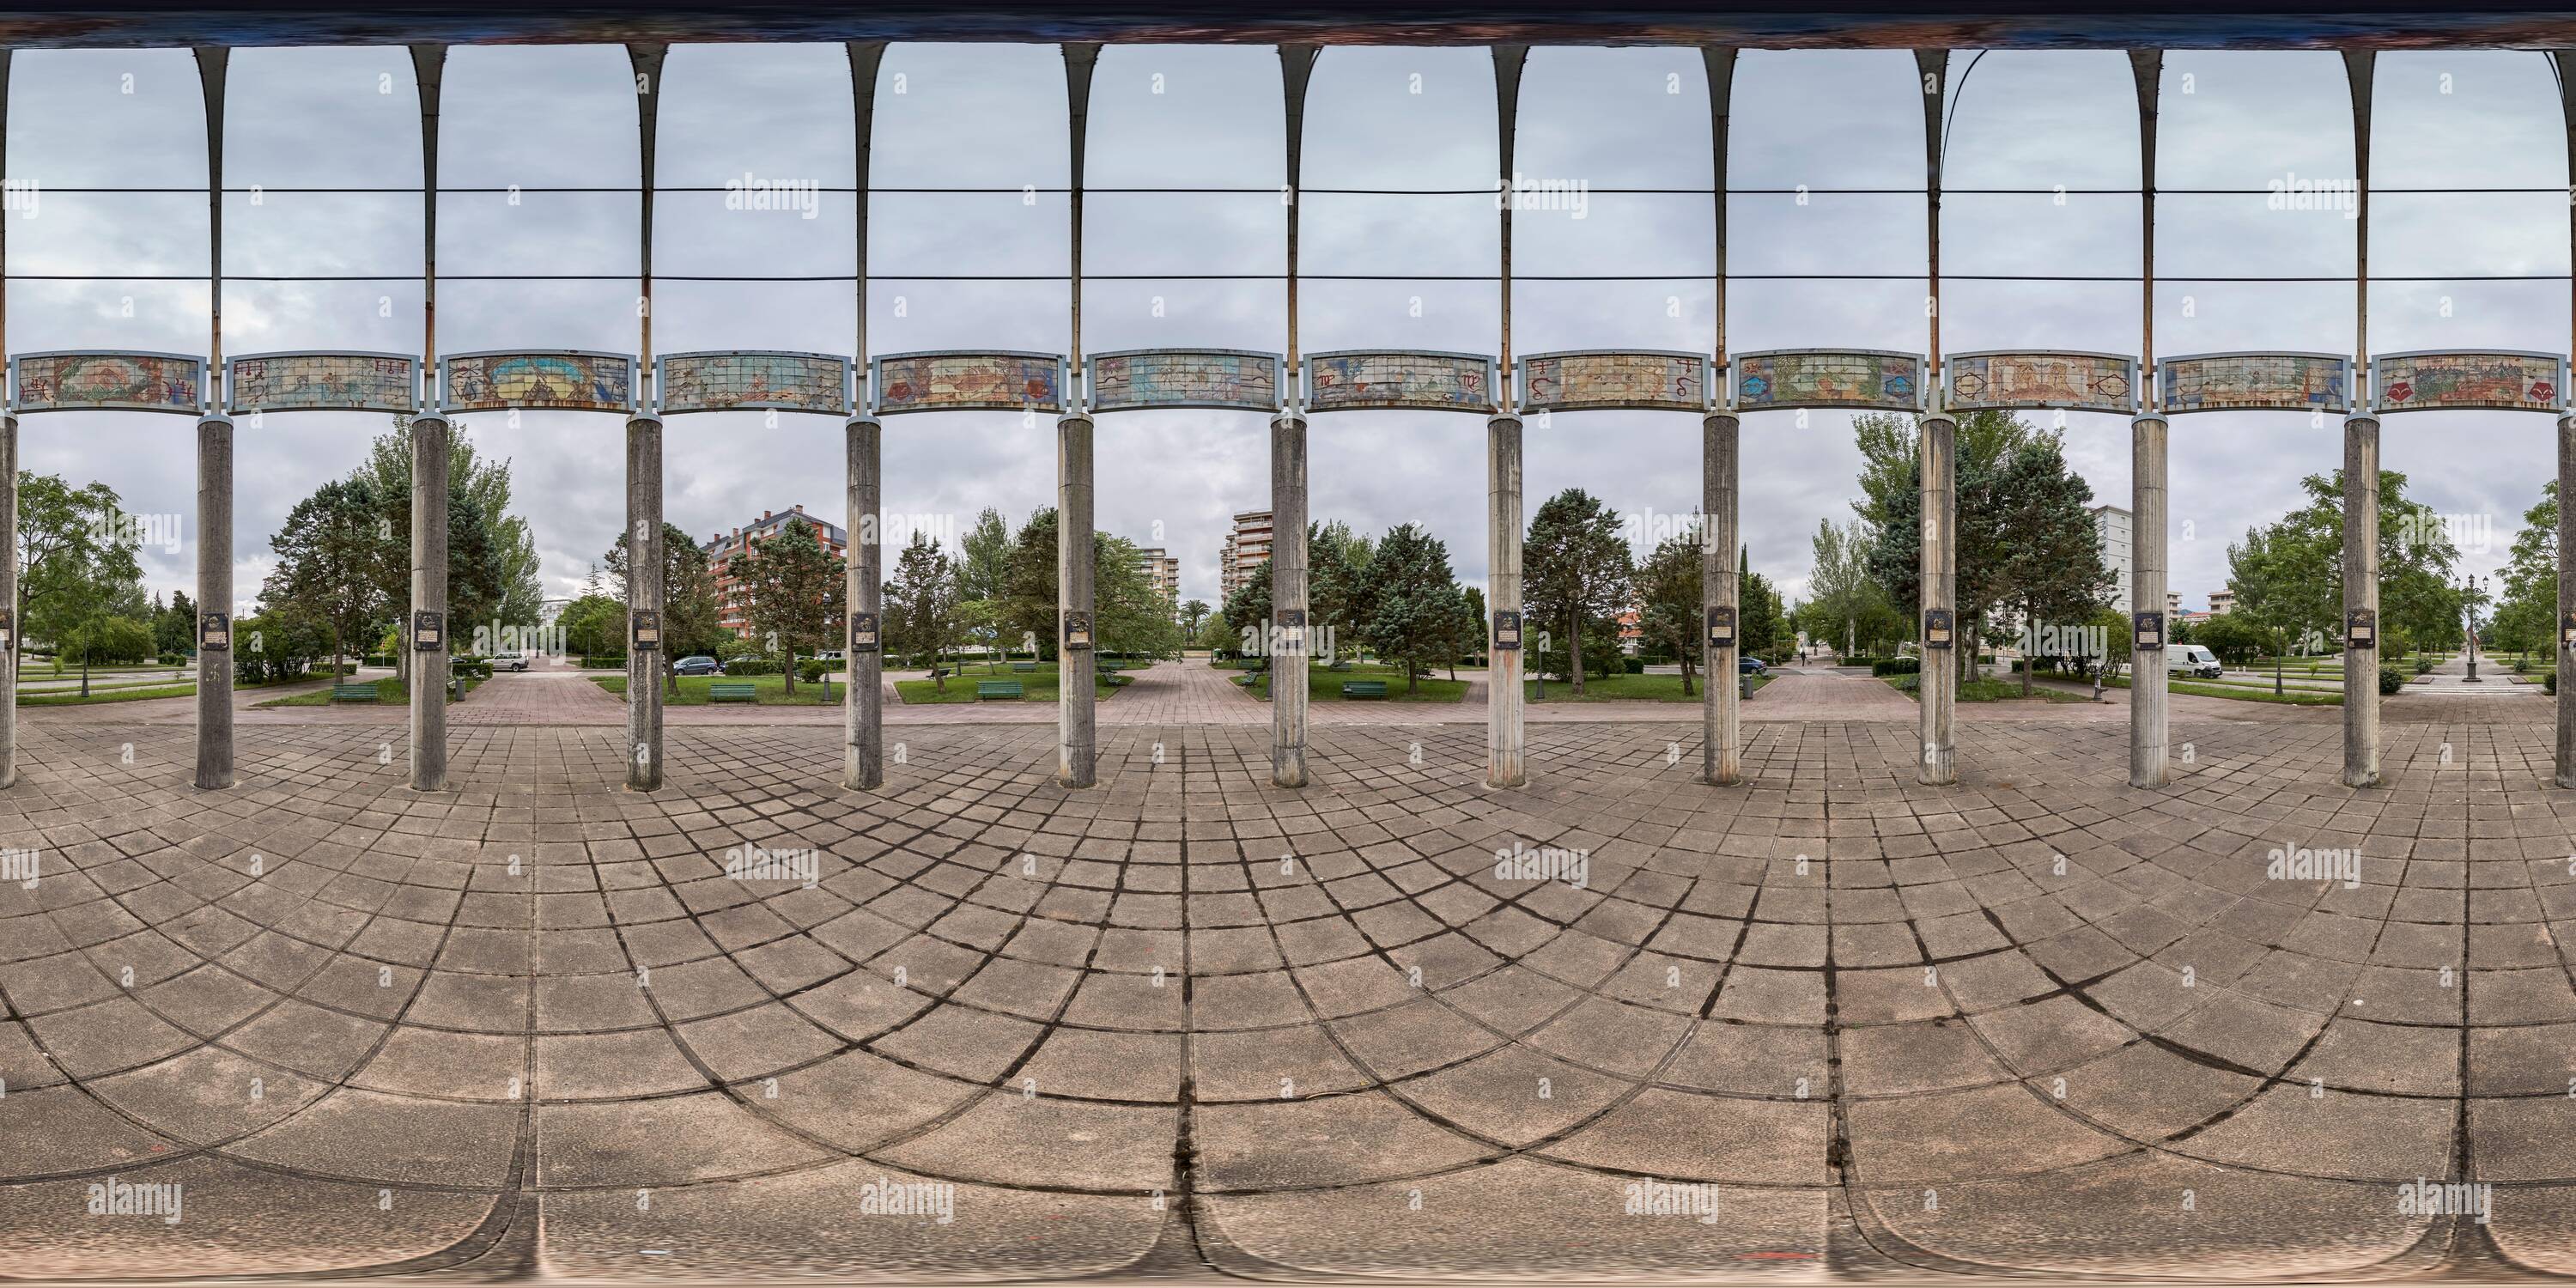 Vista panorámica en 360 grados de Panorámica de 360 grados: Monumento artístico de columnas con el horóscopo y el planeta Tierra, en el Parque tres Laredos, Laredo, Cantabria, España, Europa.